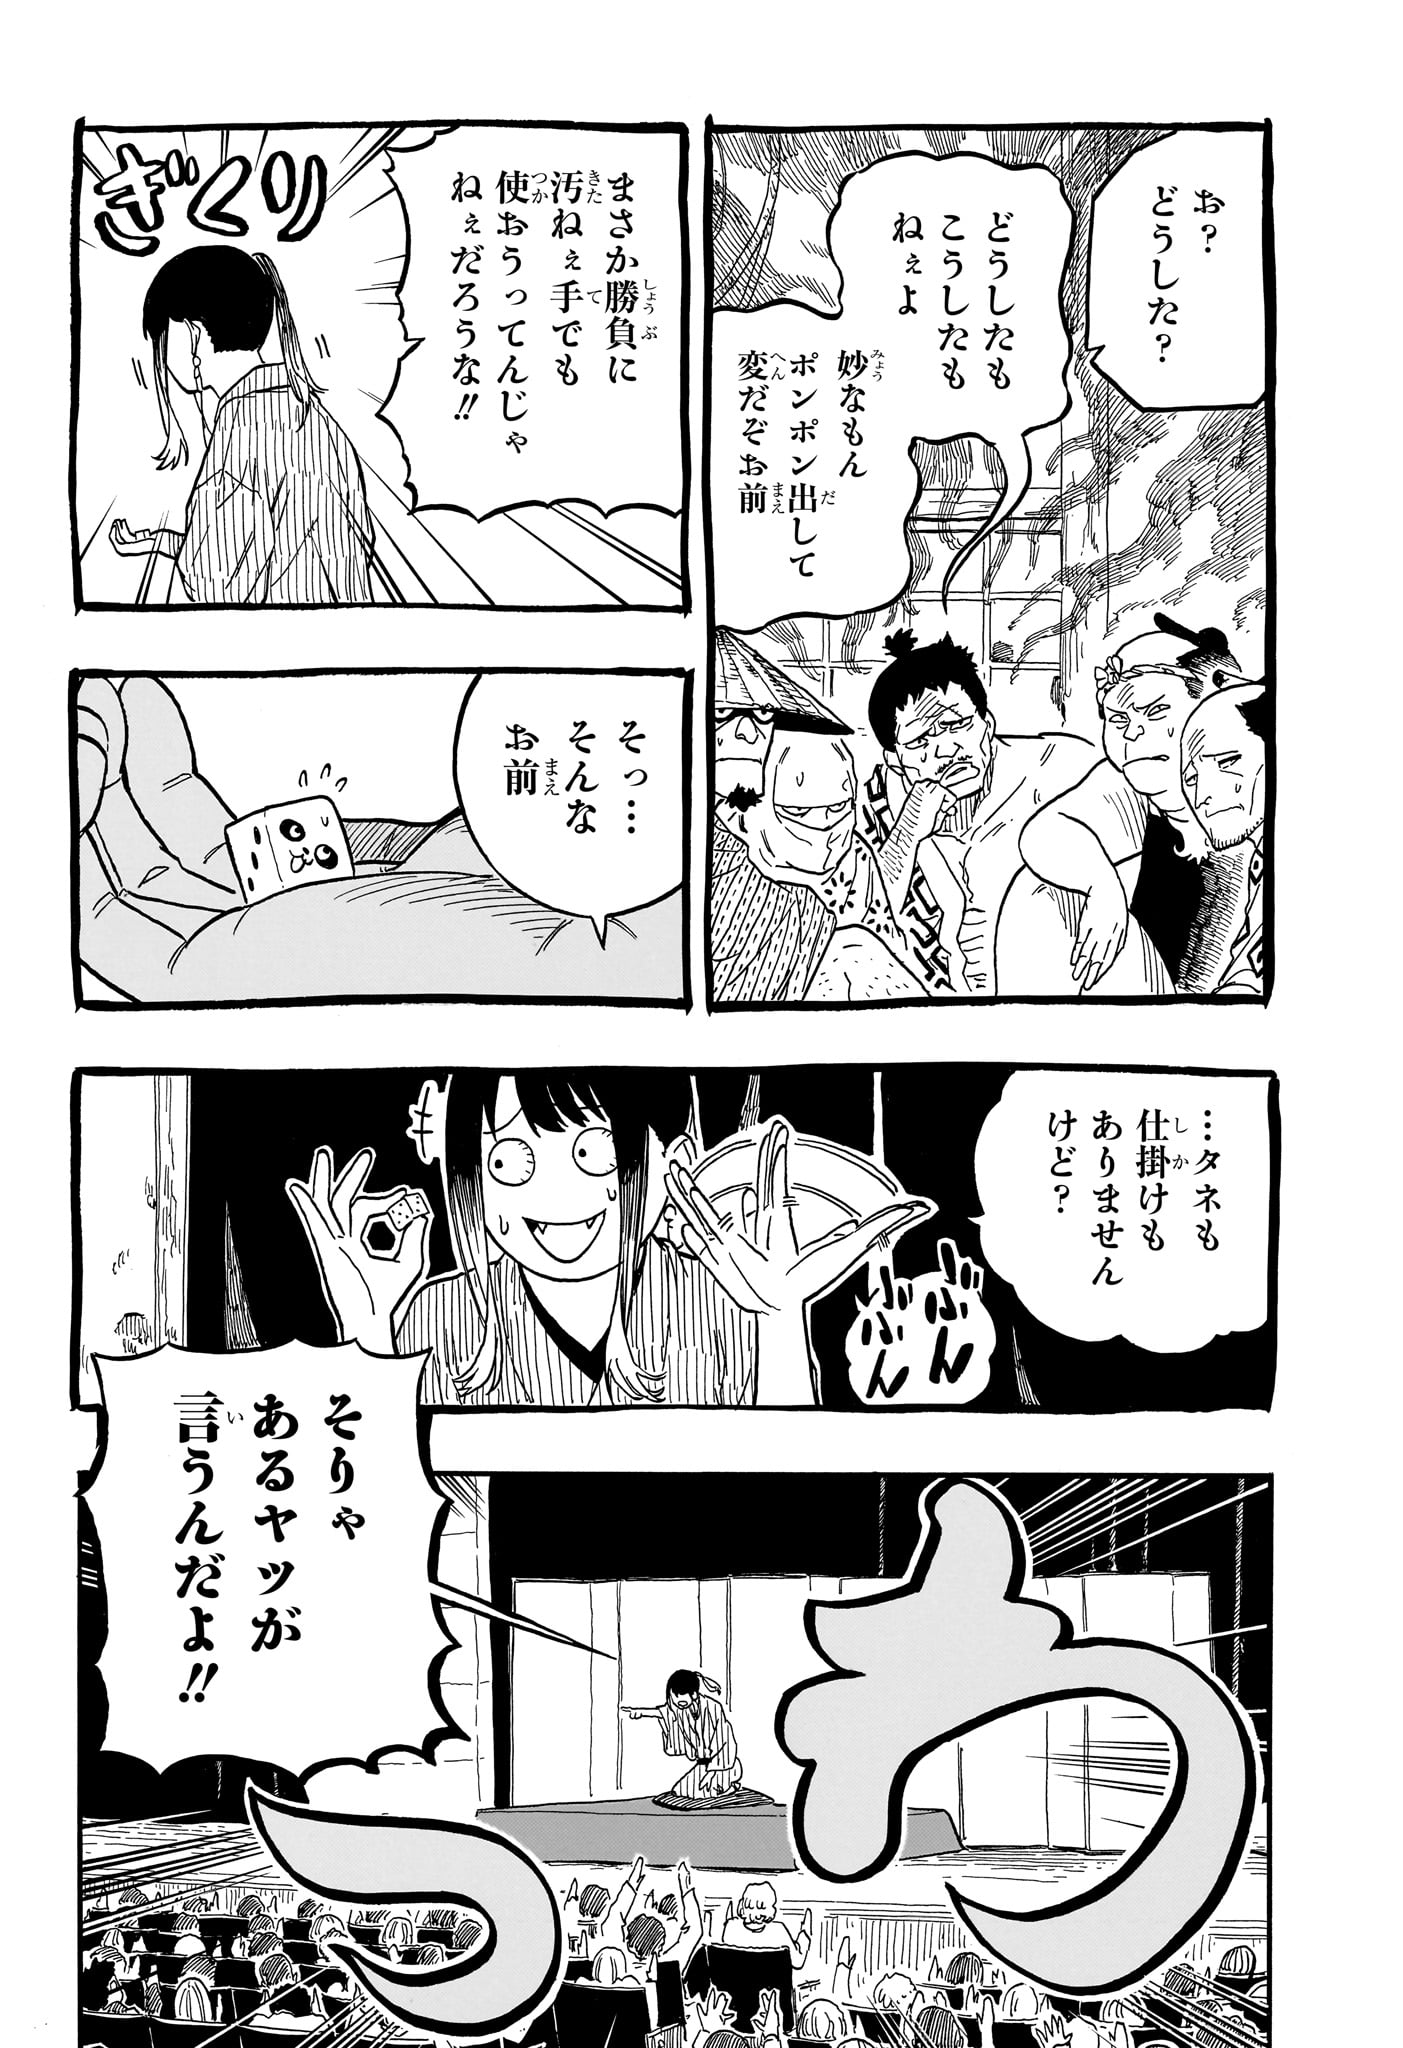 Akane-Banashi - Chapter 101 - Page 2